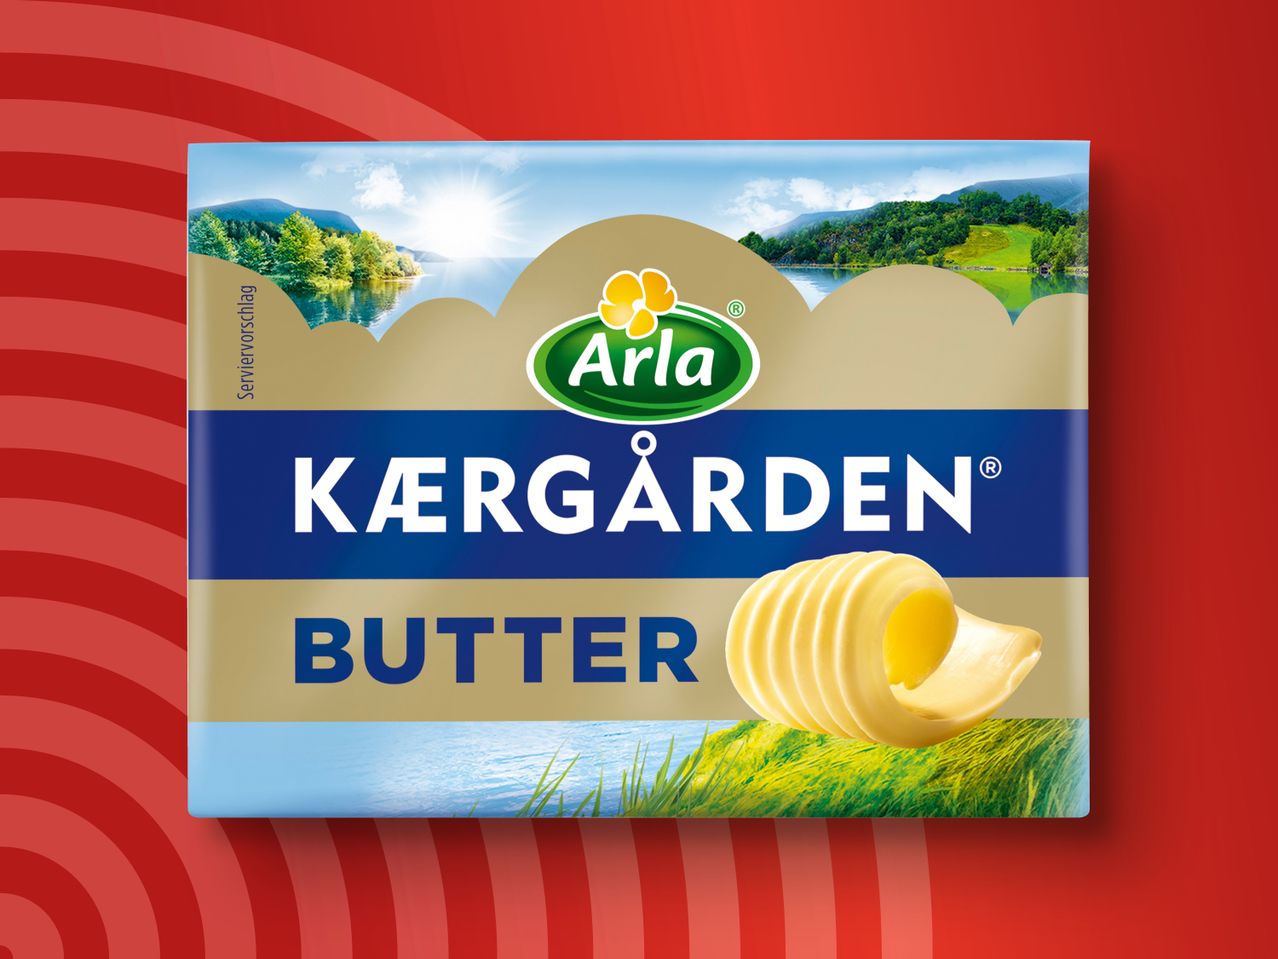 Arla Kaergarden Butter